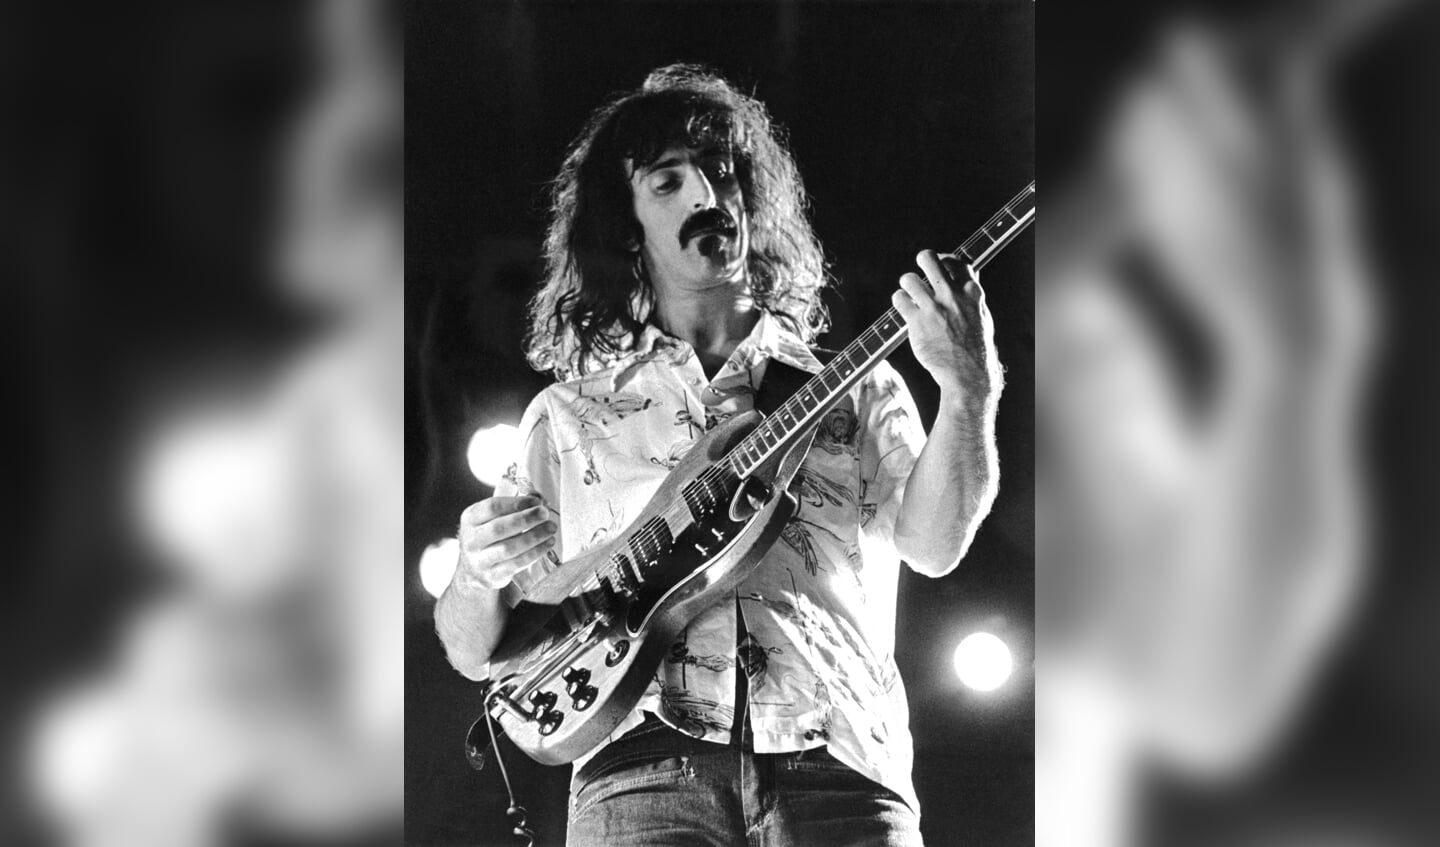 Frank Zappa op gitaar op 23 september 1974 tijdens een concert in de Zweedse hoofdstad Stockholm.